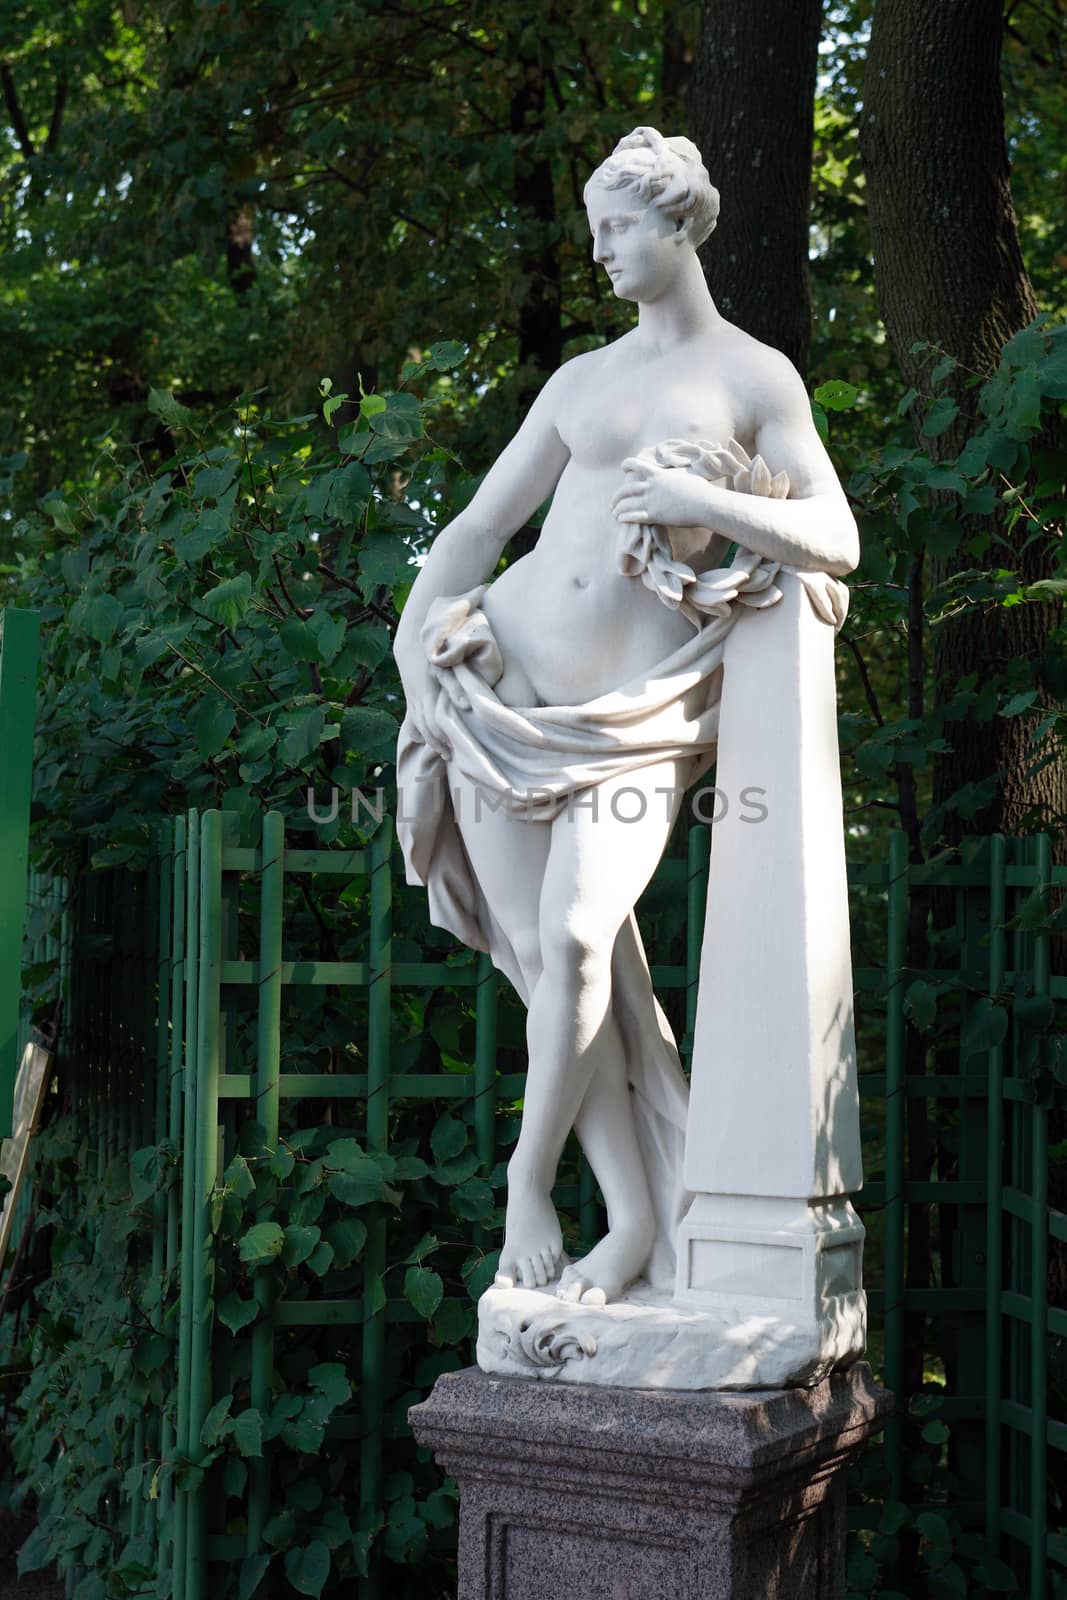 Beautiful old sculpture in famous Summer Garden. Saint Petersburg, Russia